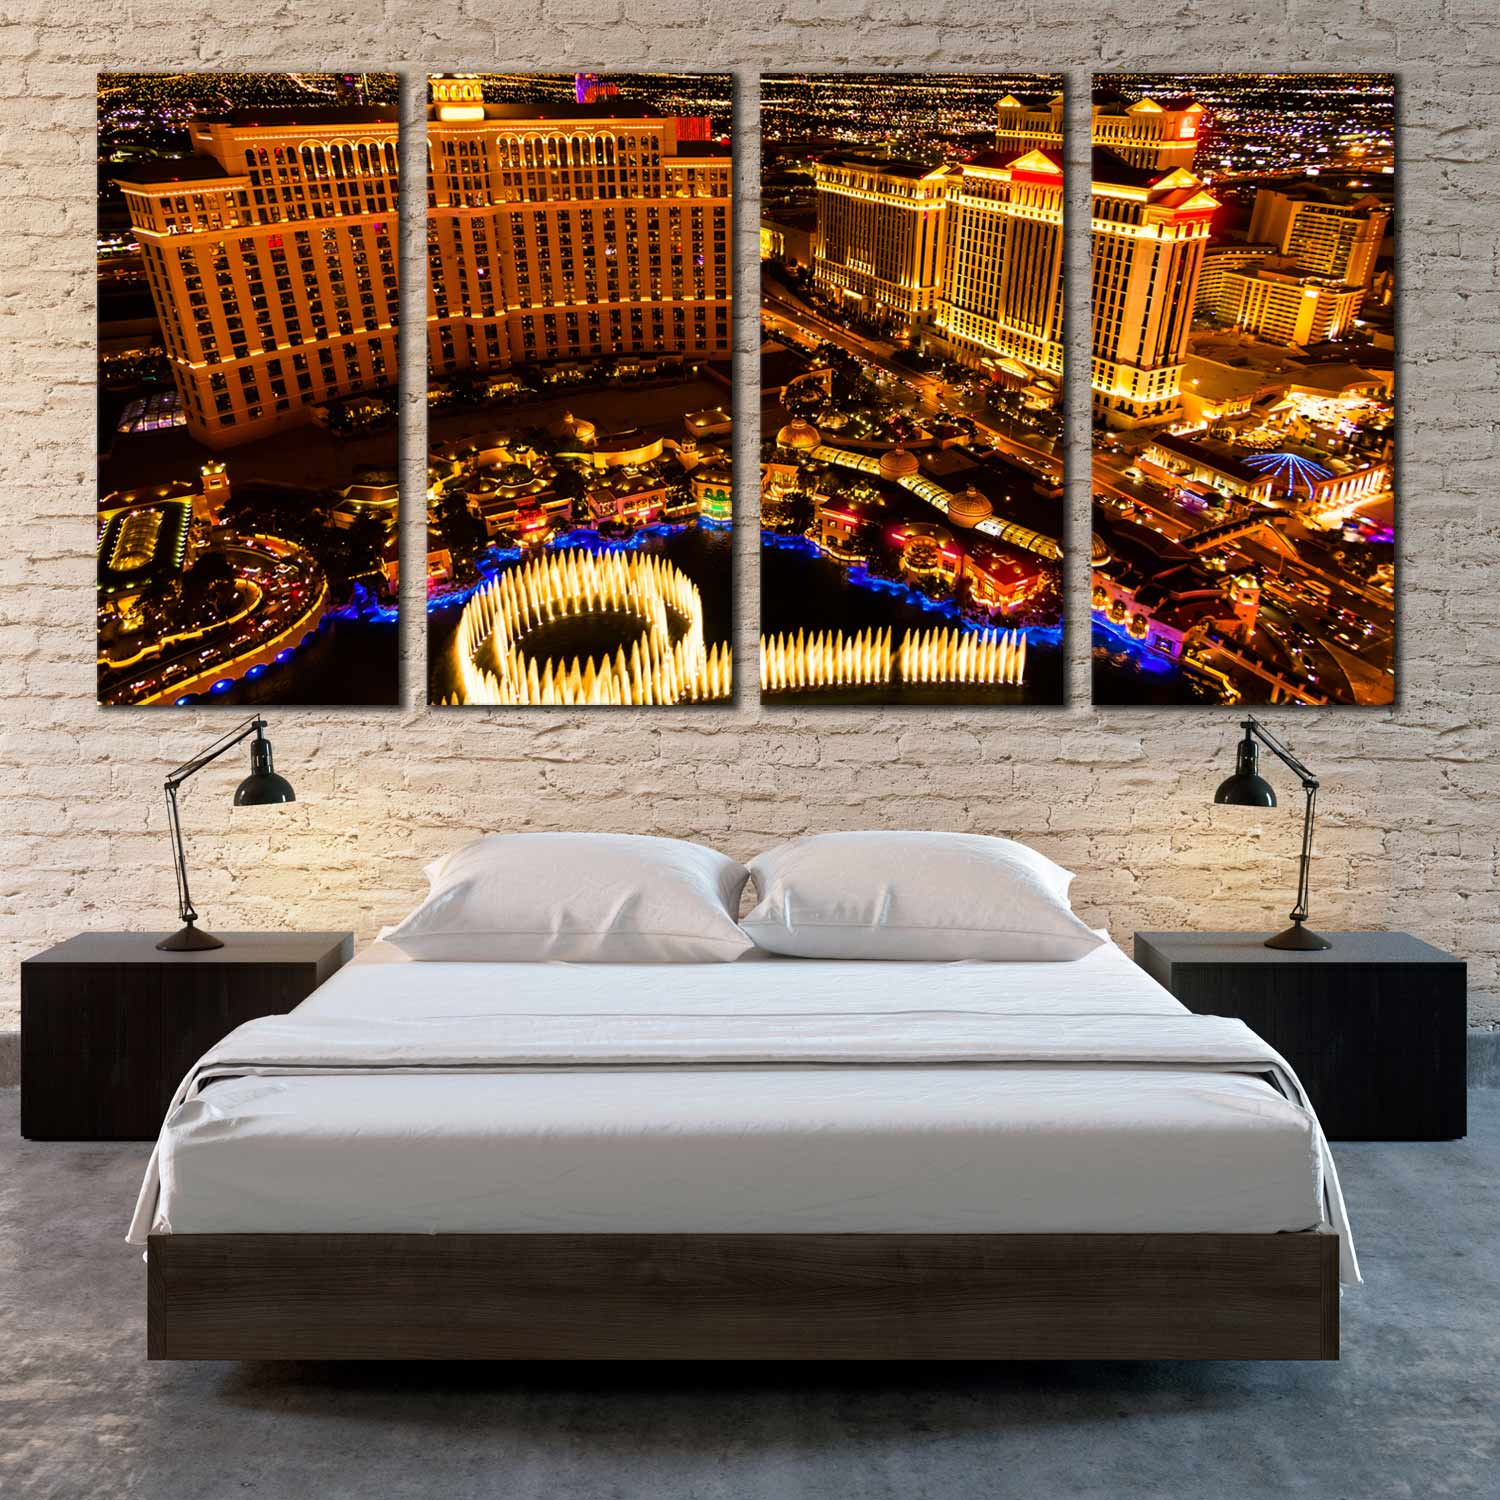 Las Vegas Print Canvas Wall Art Set